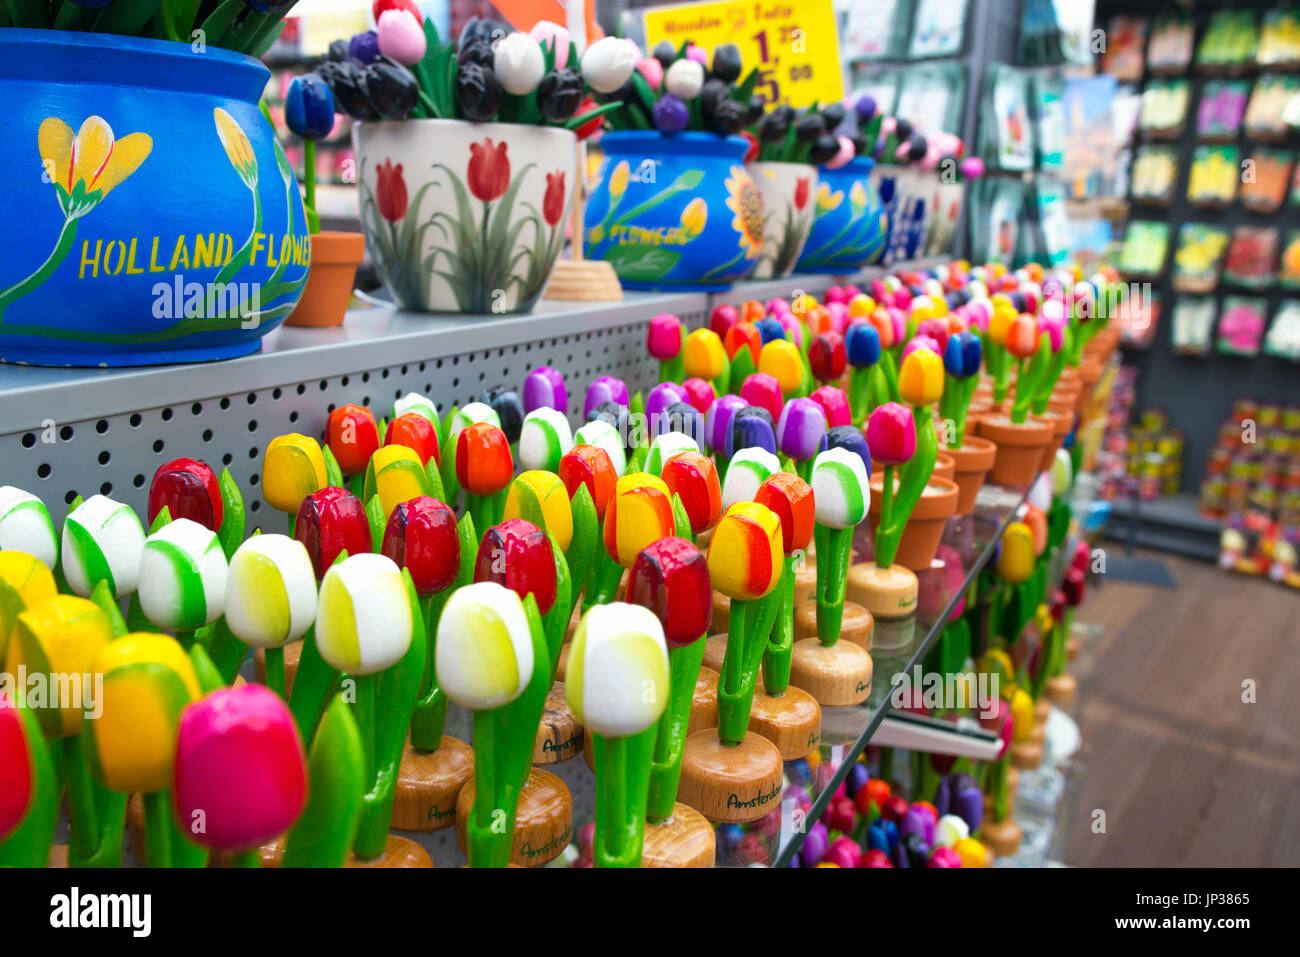 Coloridos tulipanes de madera y ollas, recuerdos típicos de Ámsterdam, Países Bajos Foto de stock